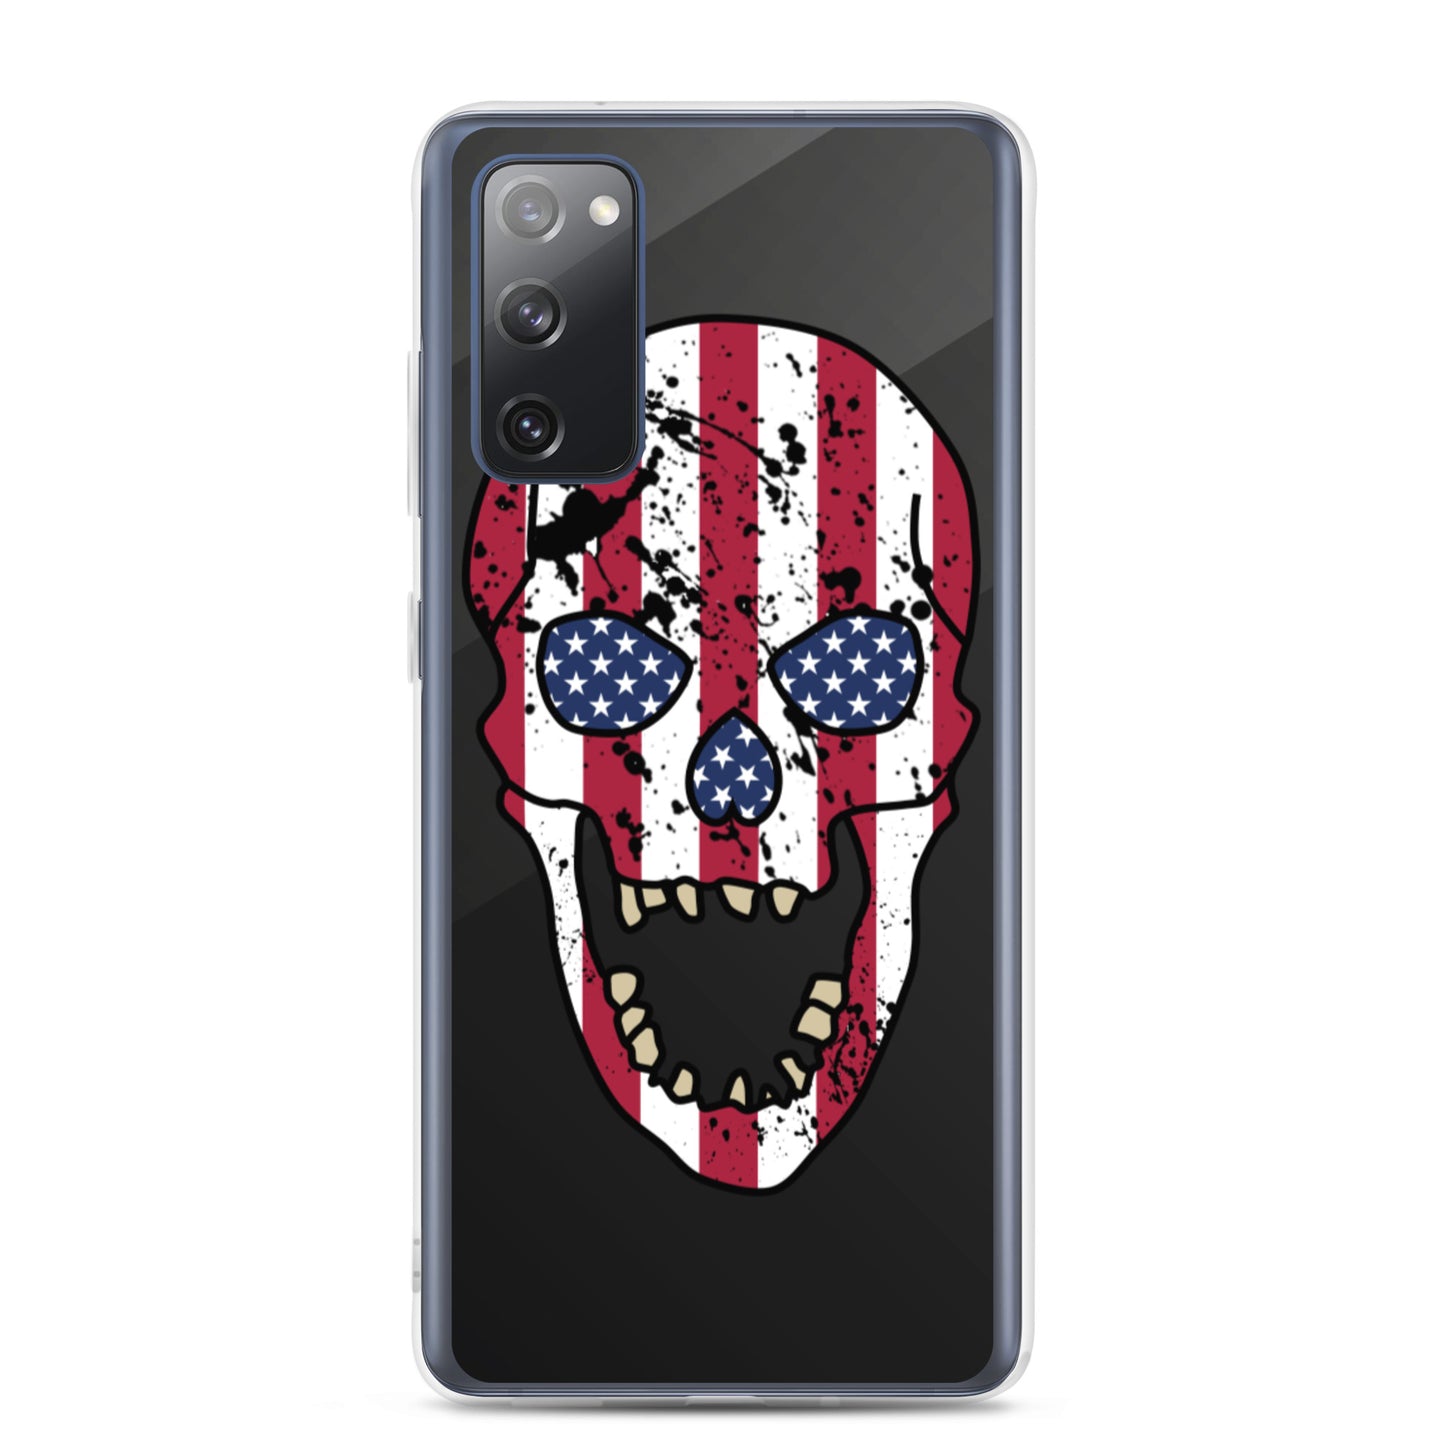 USA Skull Samsung Case - Galaxy S20 FE